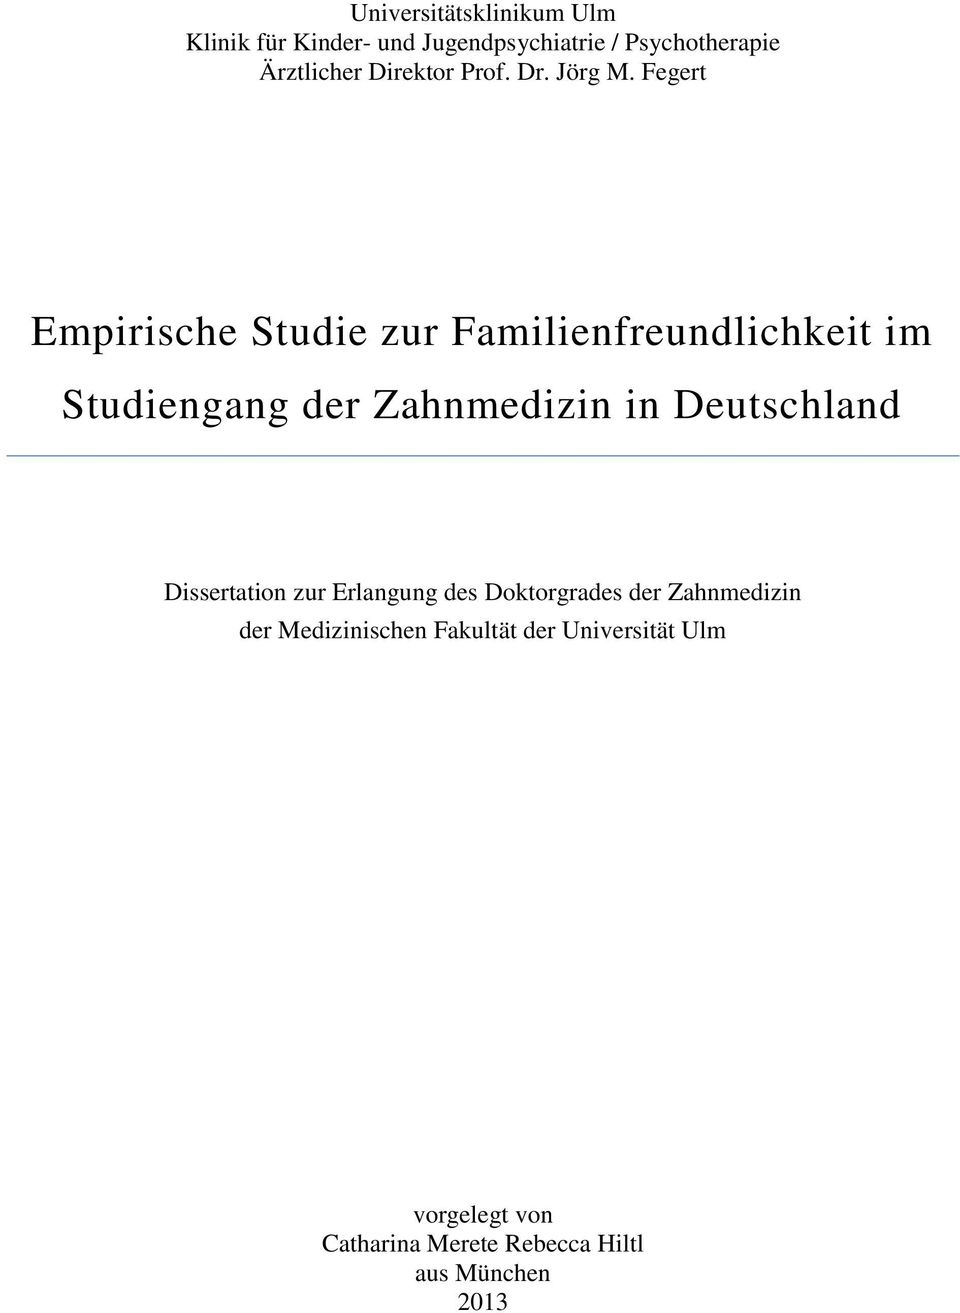 Fegert Empirische Studie zur Familienfreundlichkeit im Studiengang der Zahnmedizin in